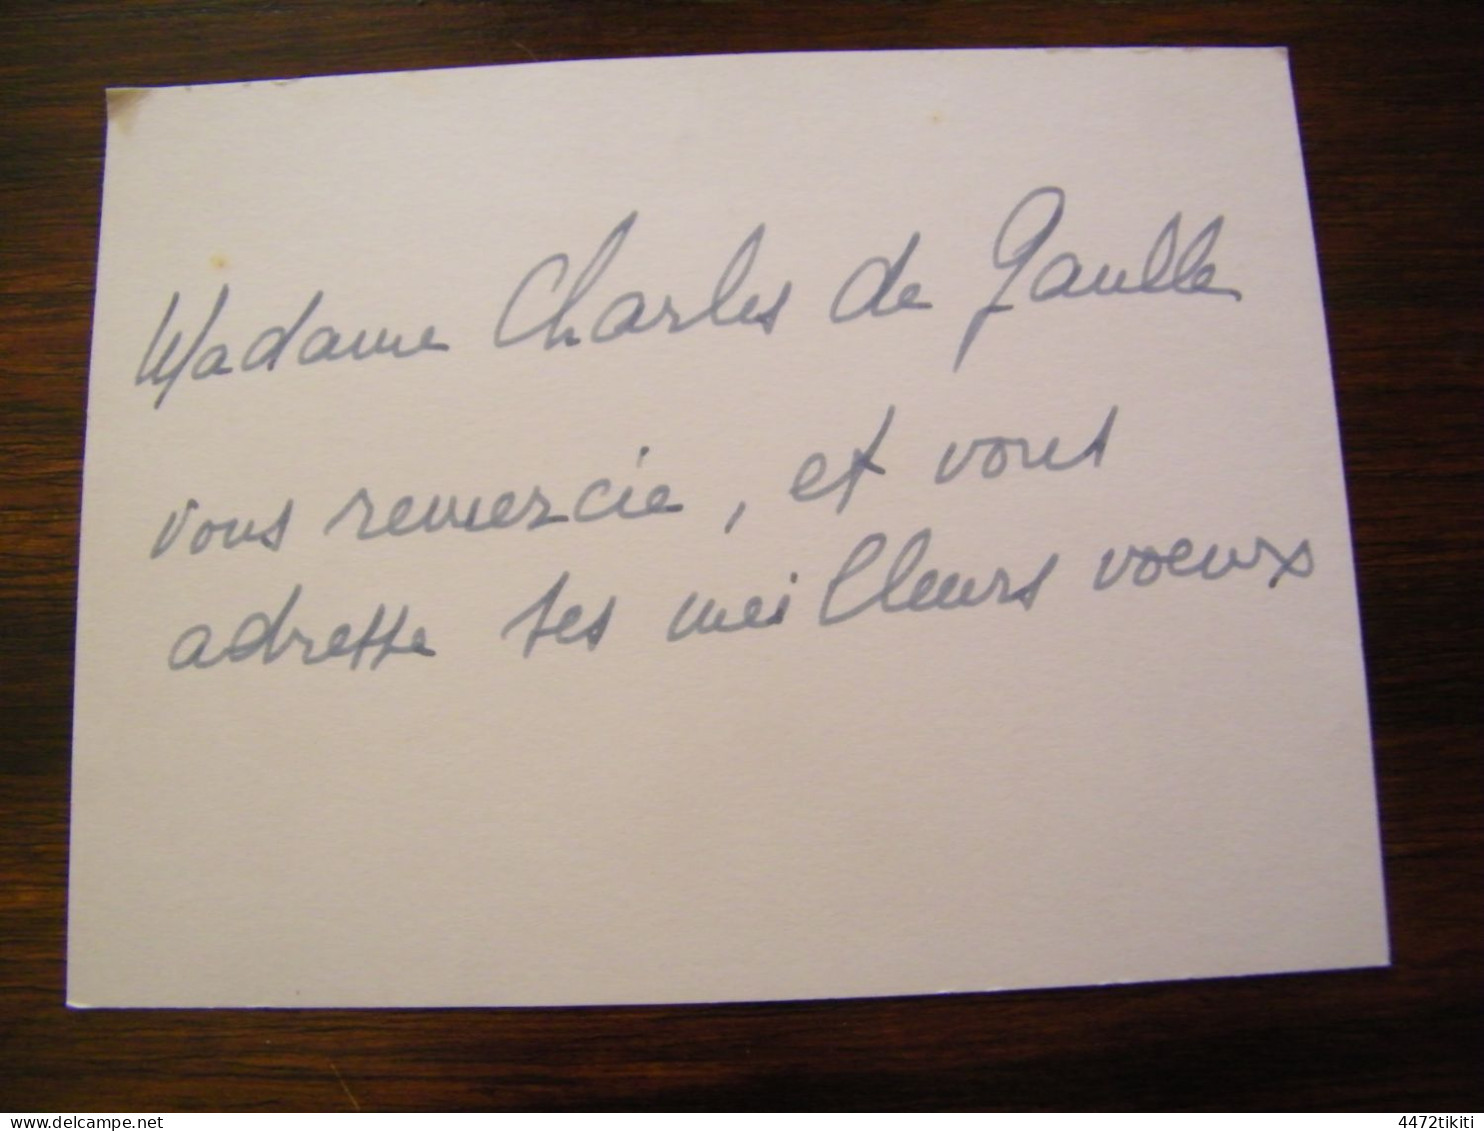 Carte Manuscrite Par Madame Général Charles De Gaulle Née Yvonne Vendroux -  SUP (HM 20) - Politisch Und Militärisch